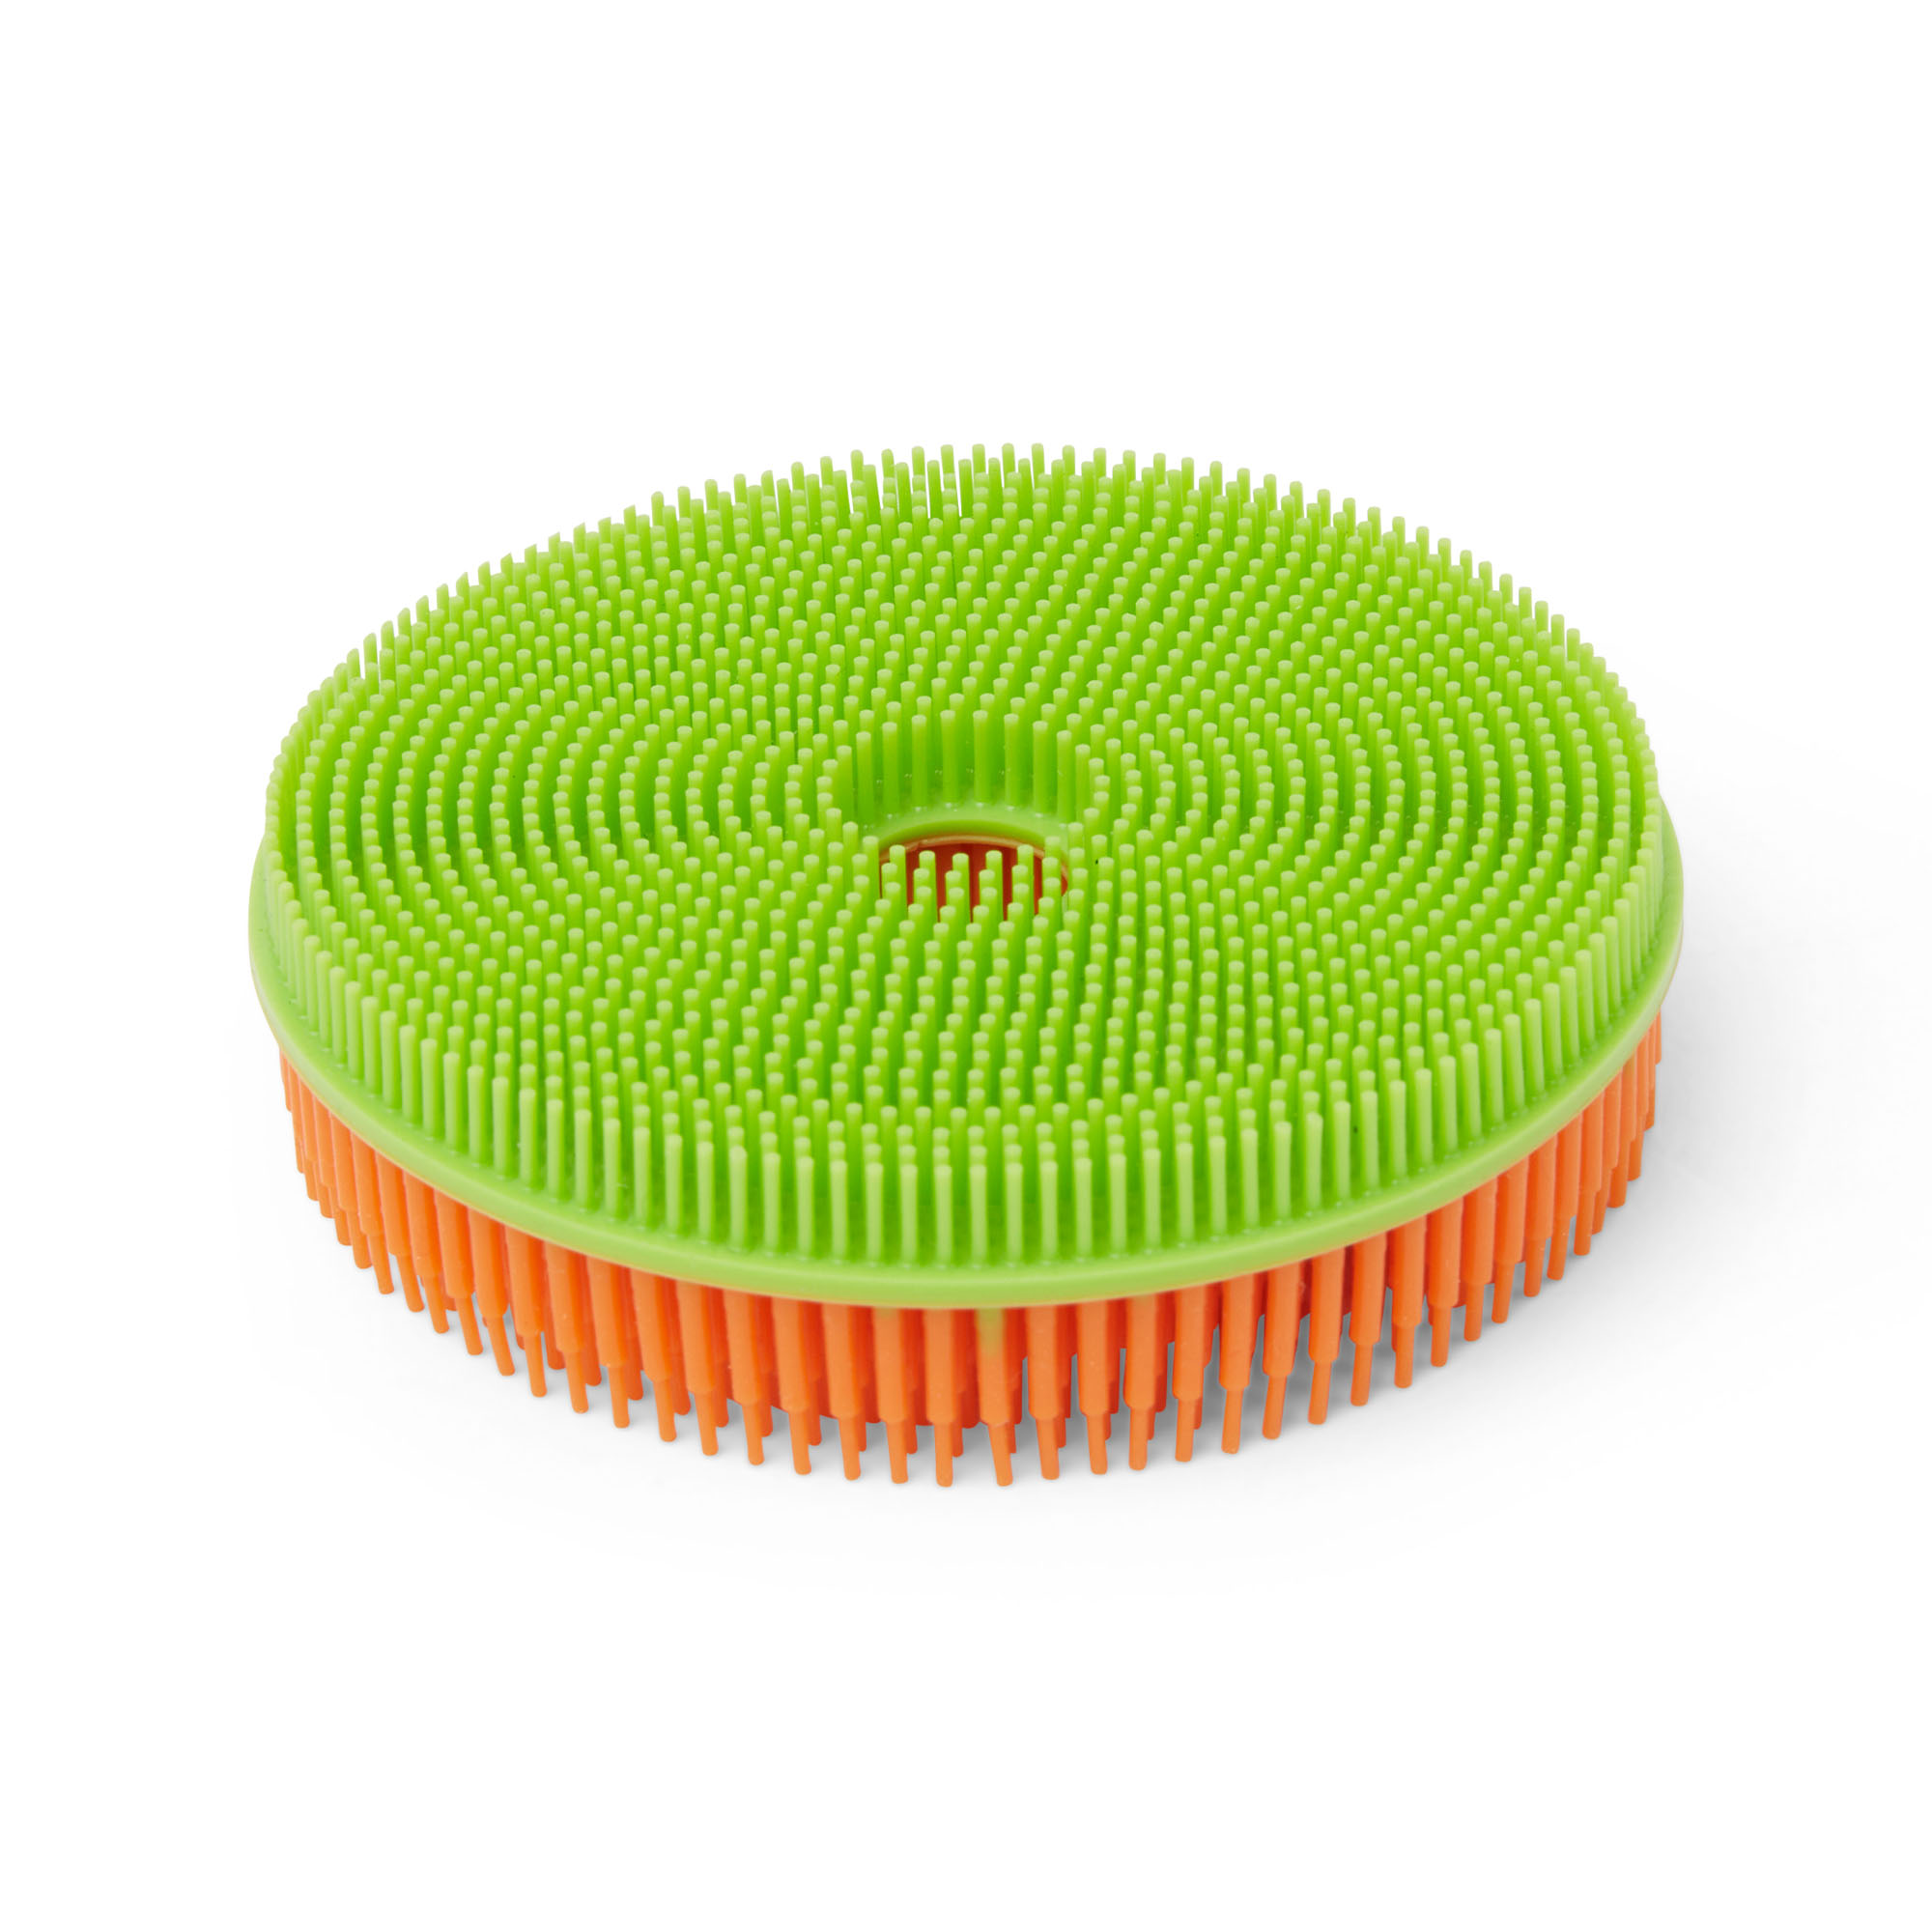 Spugna multiuso in silicone bicolor, arancio/verde, large